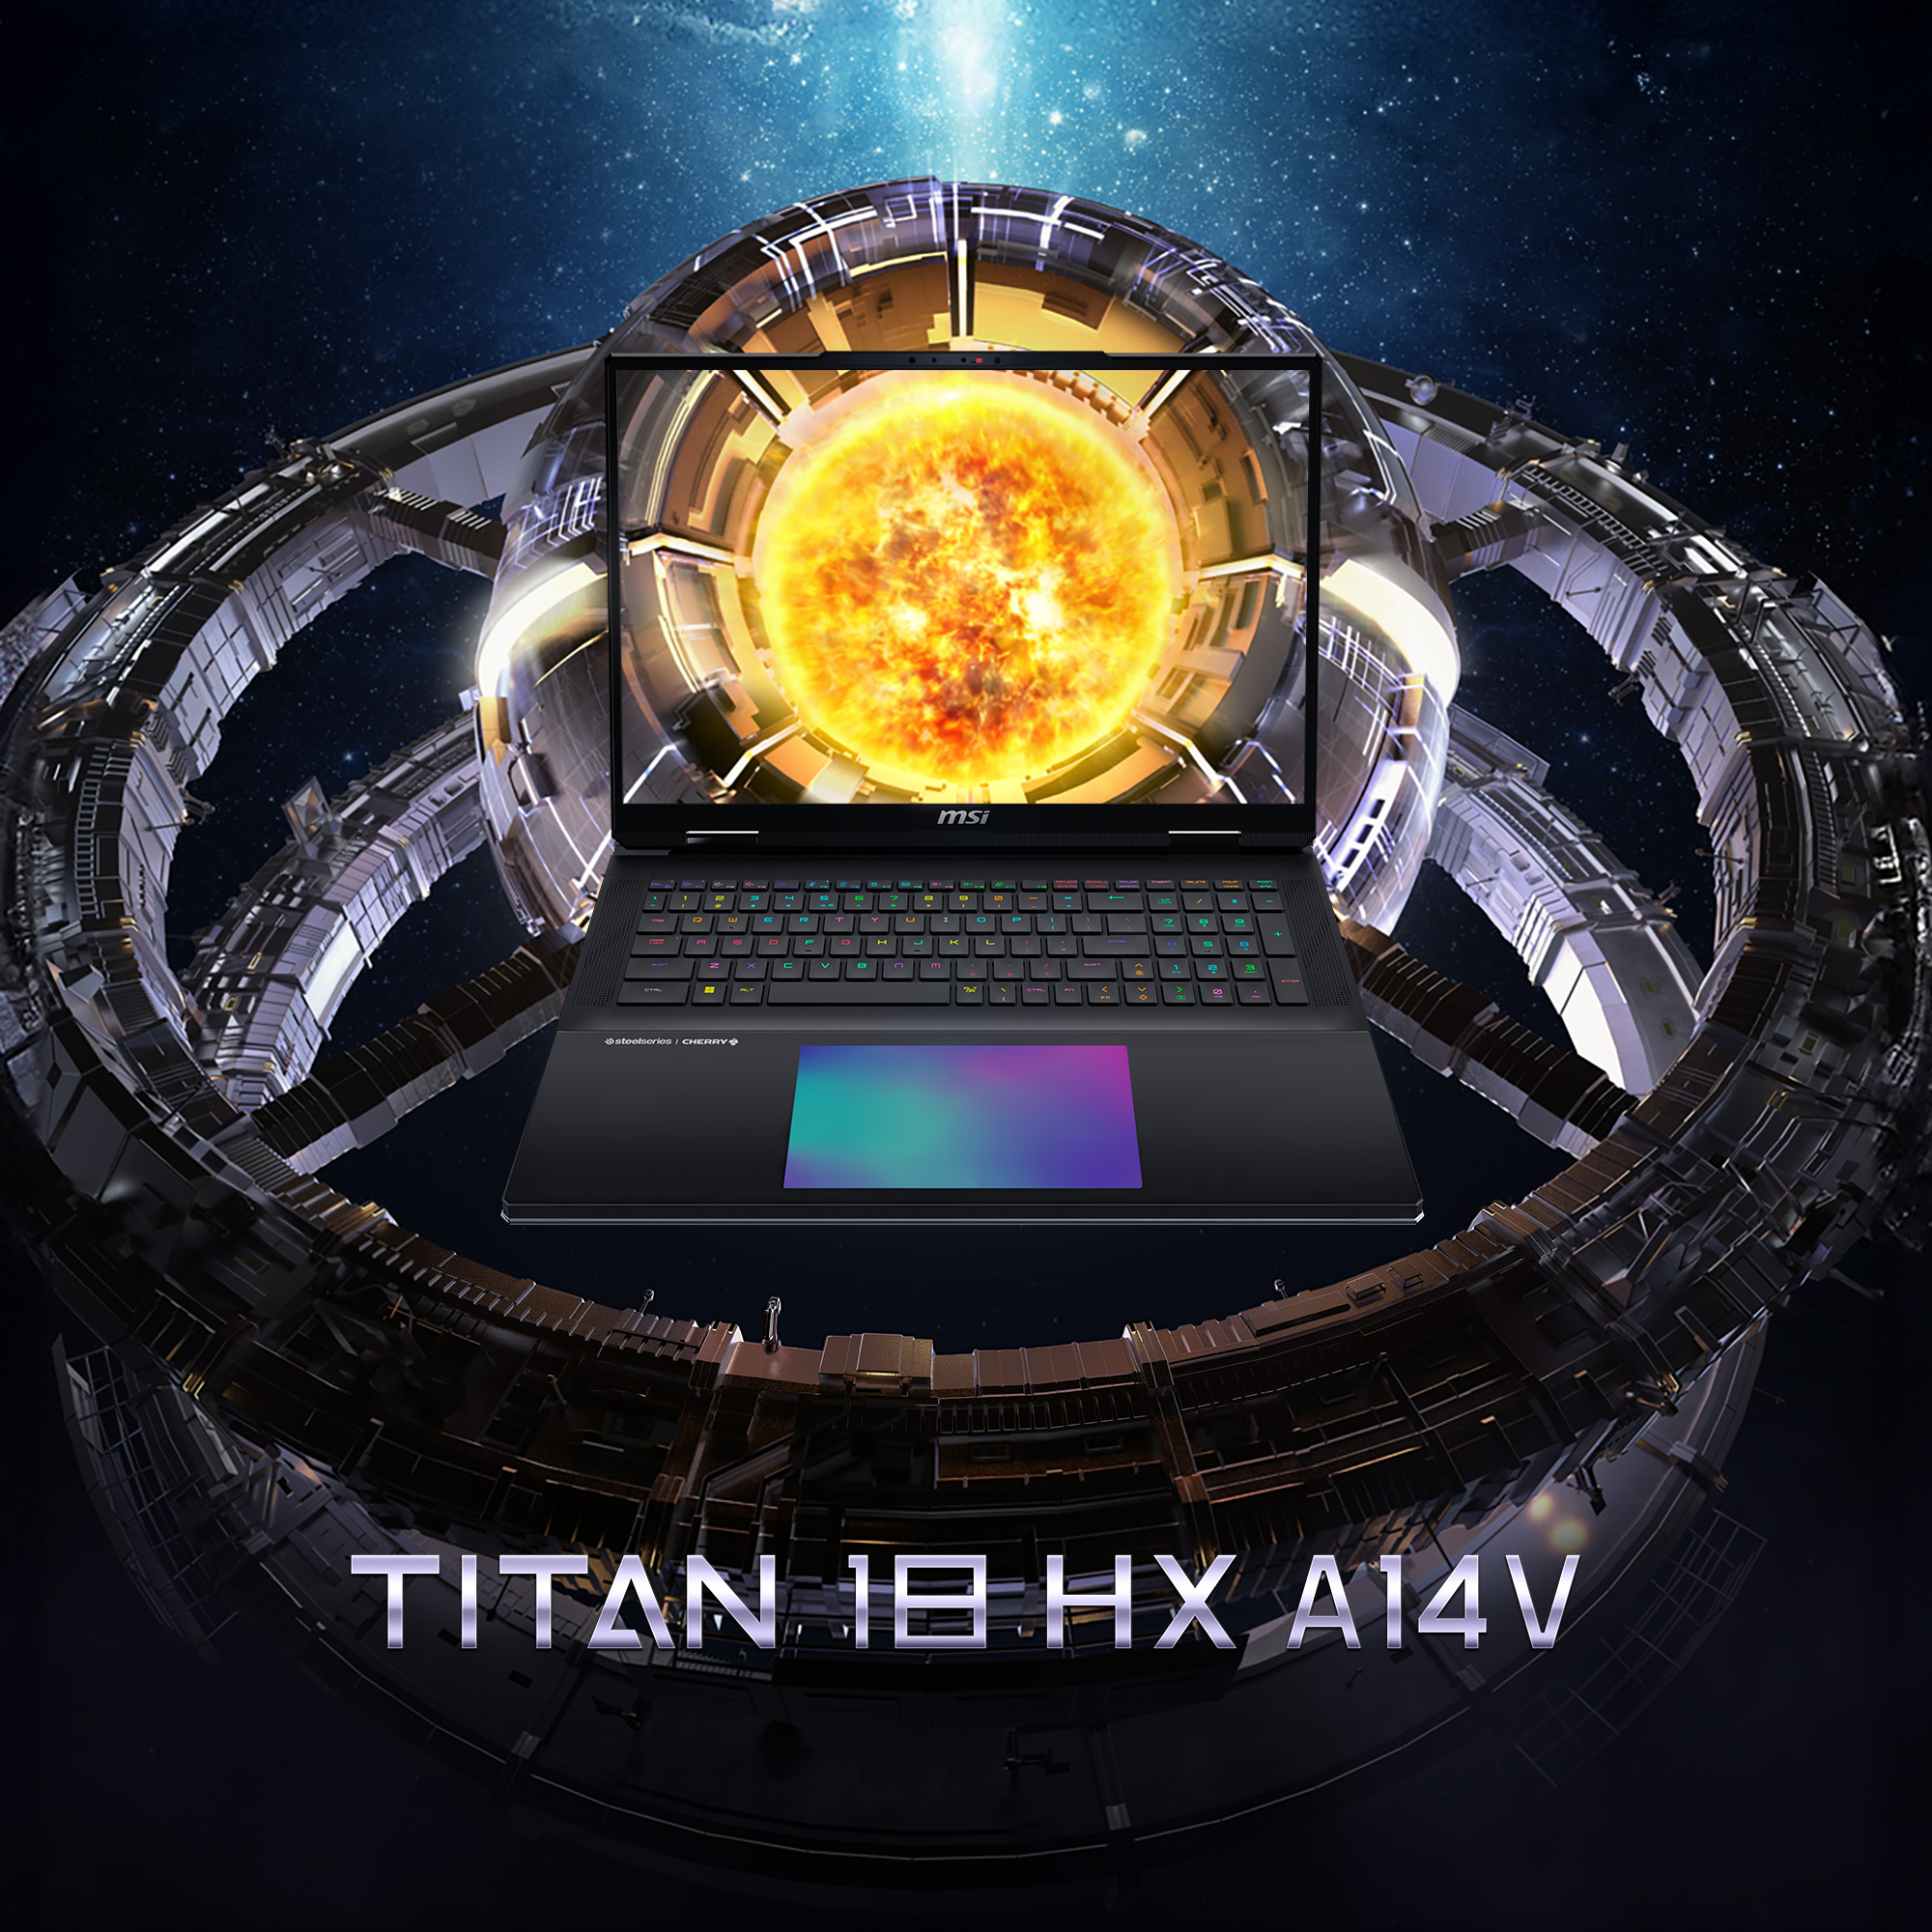 MSI Titan 18 HX A14VIG-069 - ABSOLUTE LEISTUNG